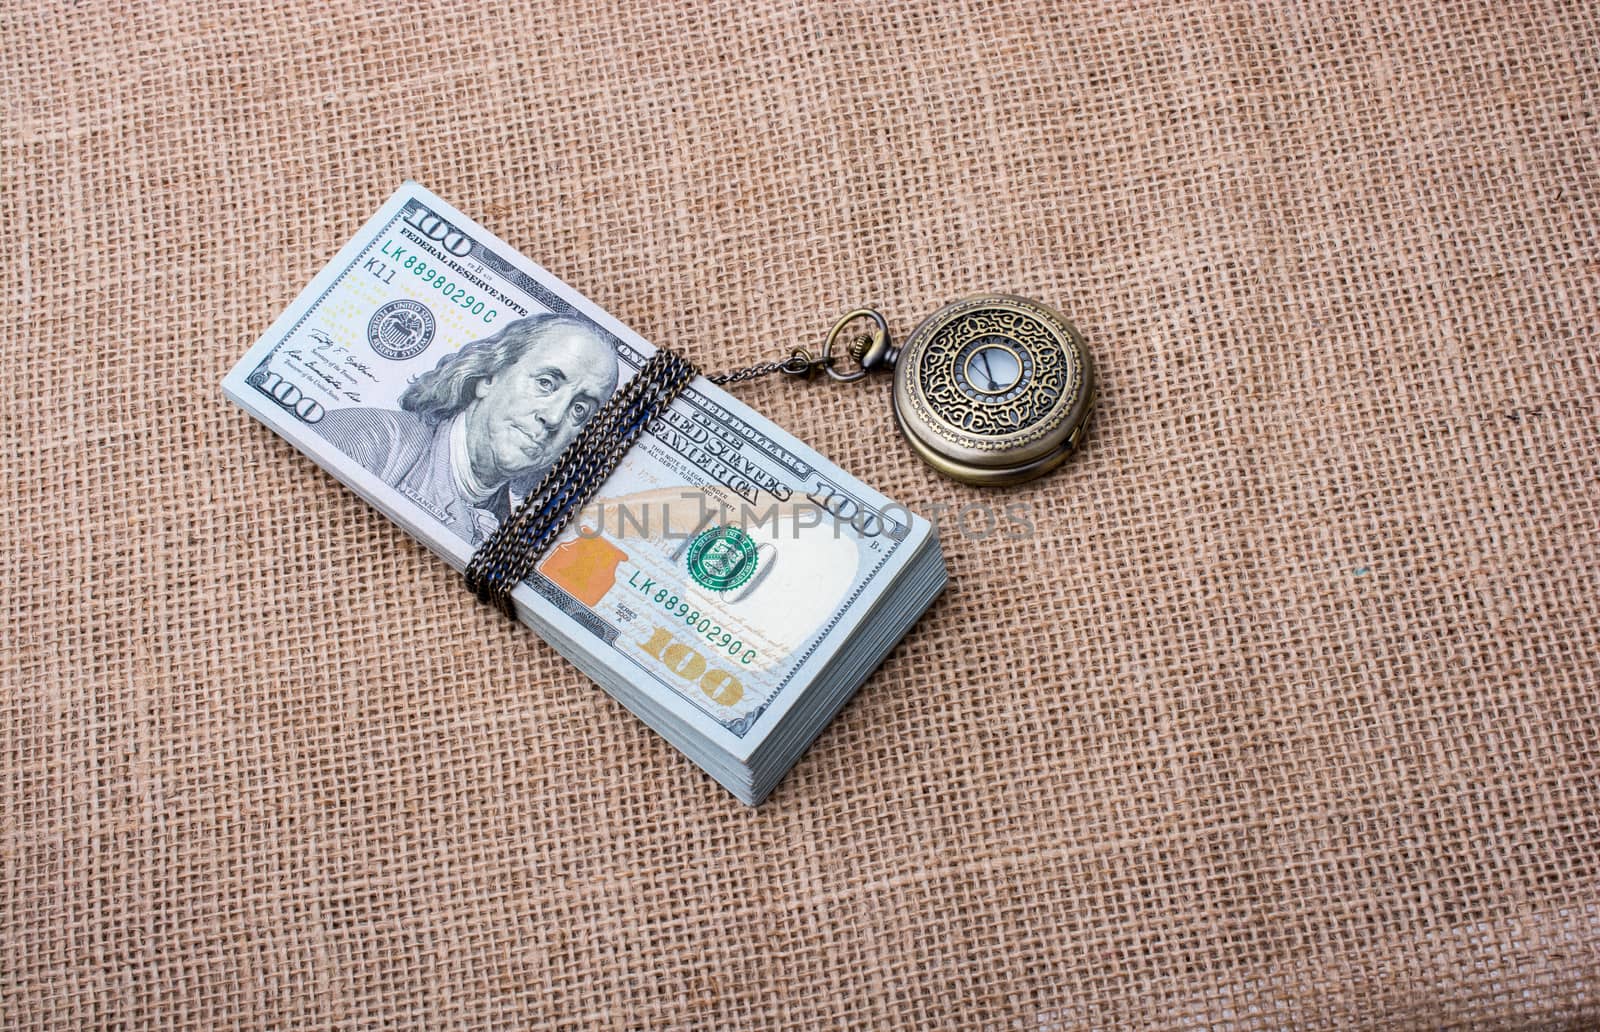 Pocket watch wrapped around US dollar by berkay